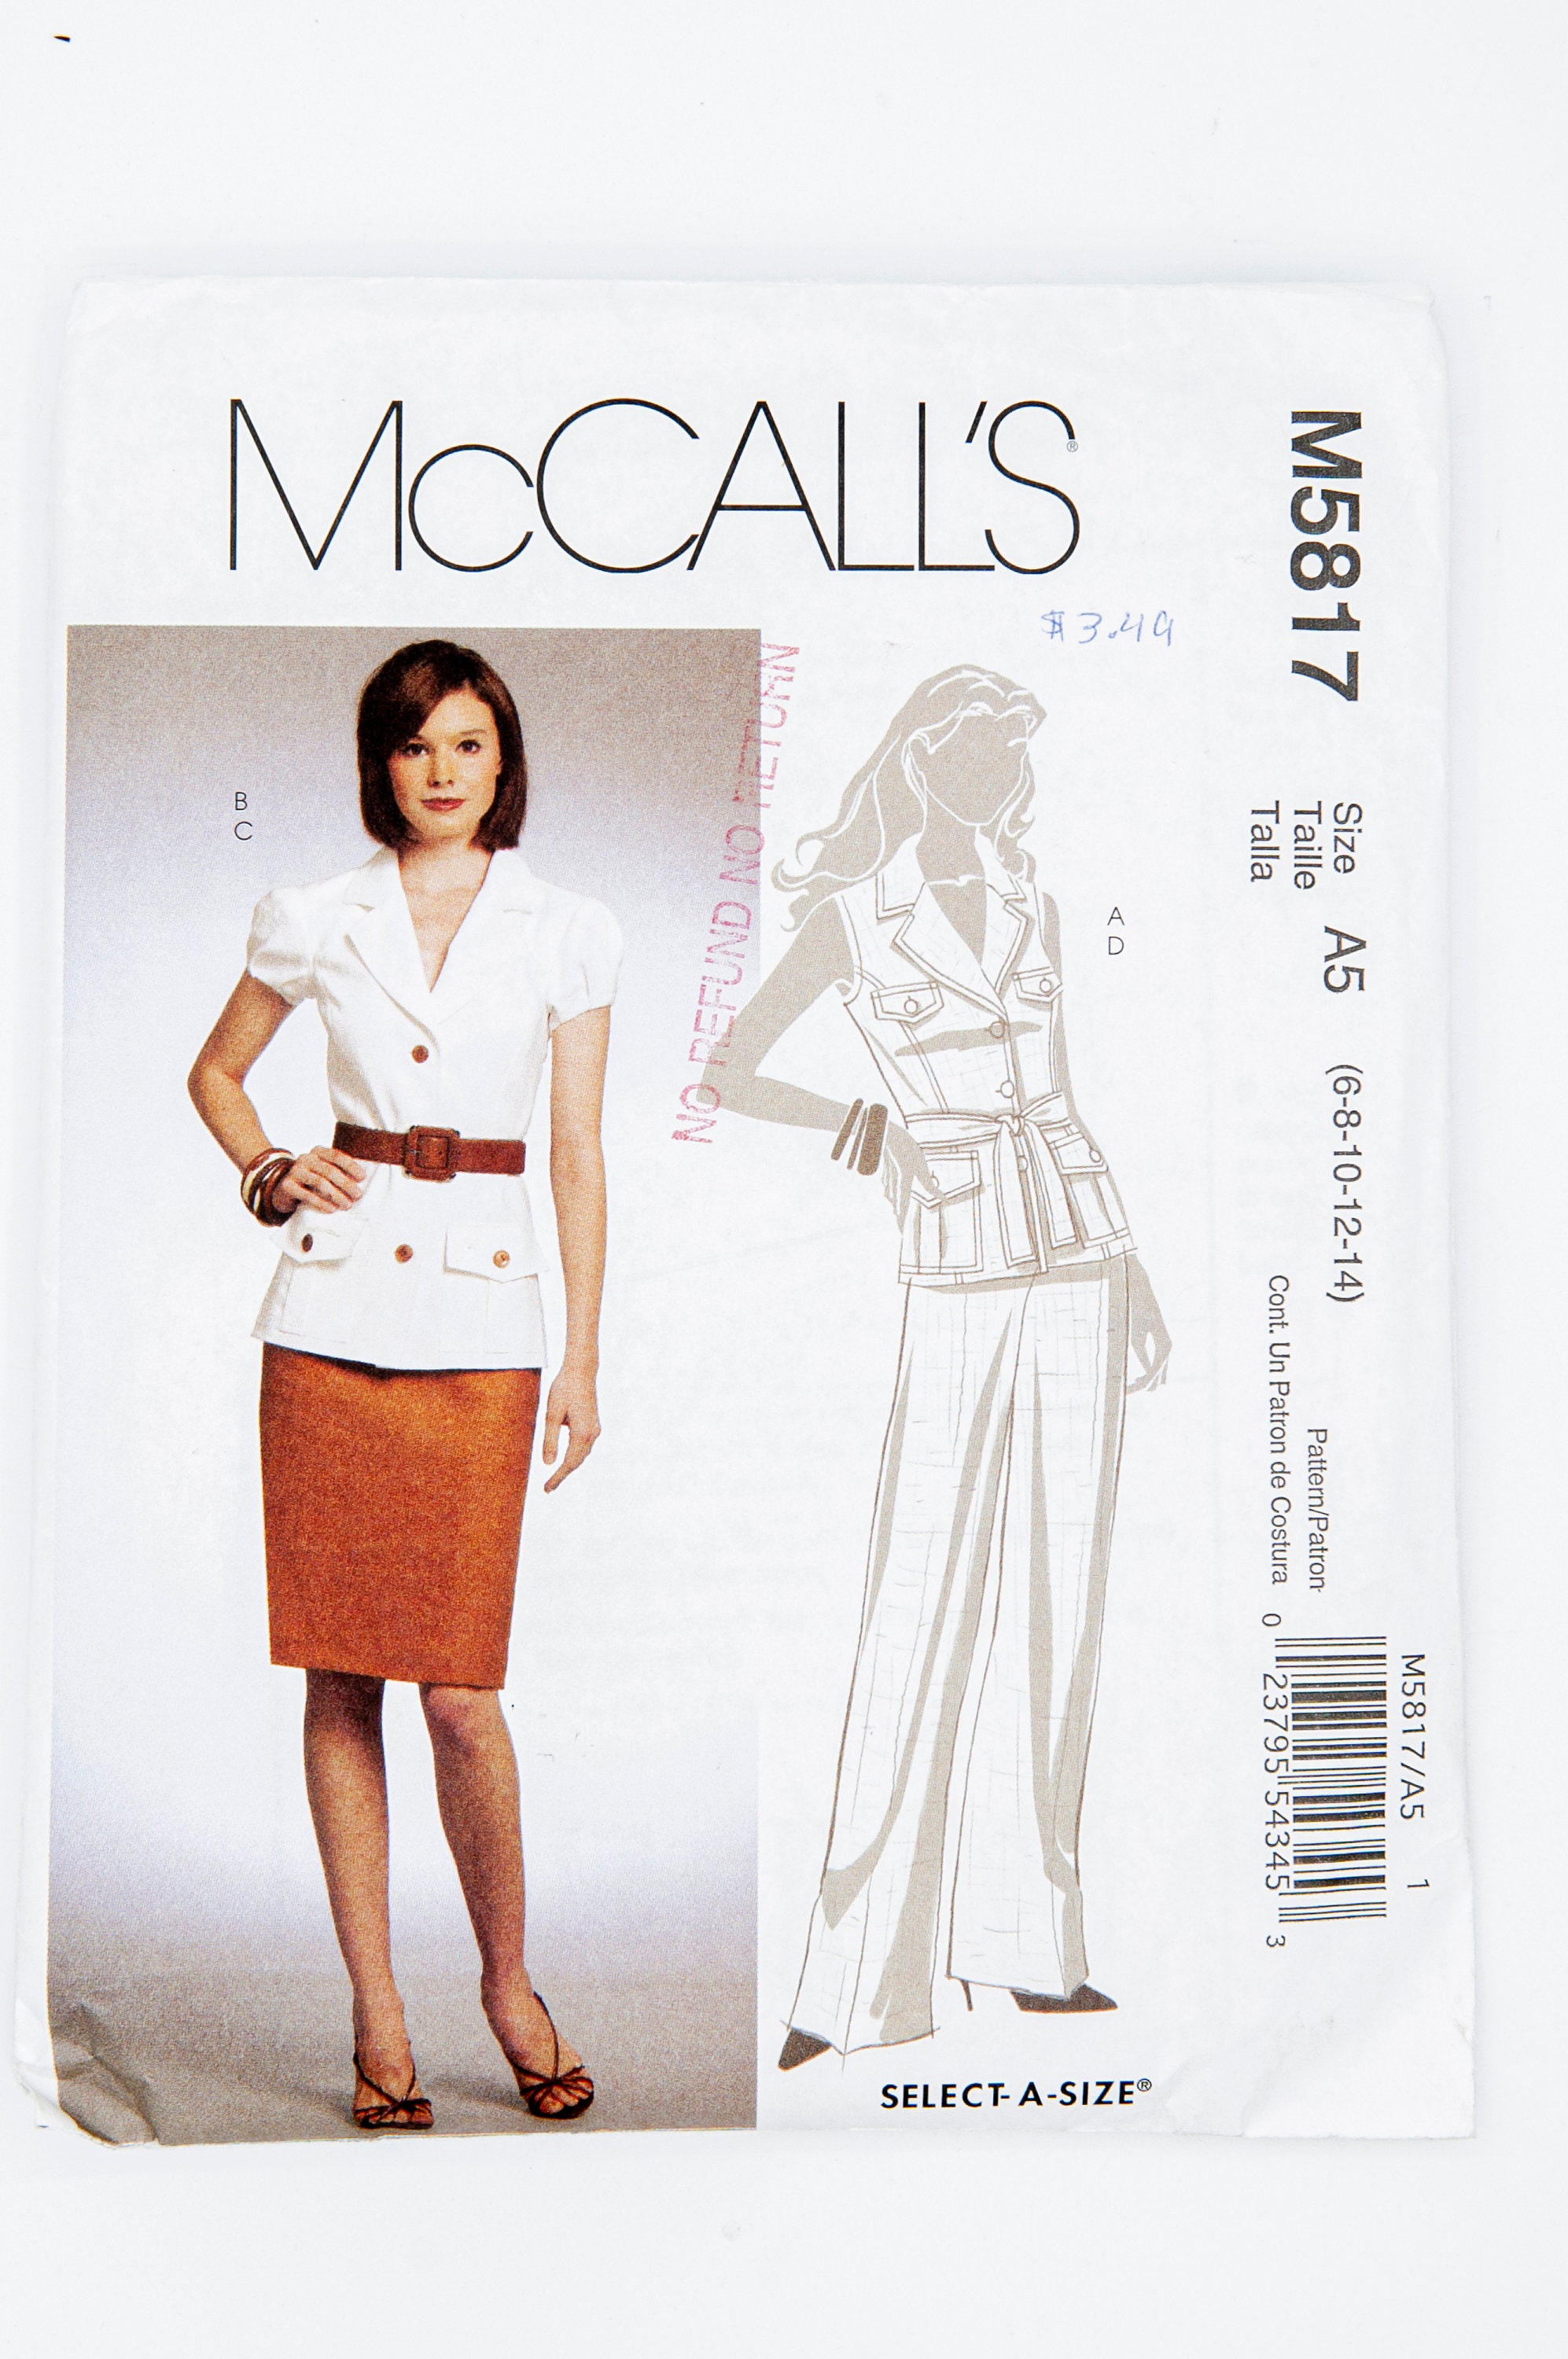 McCalls Patterns Misses 14-22 Dresses Tops Jackets Skirt Pants Vest UNCUT U PICK 